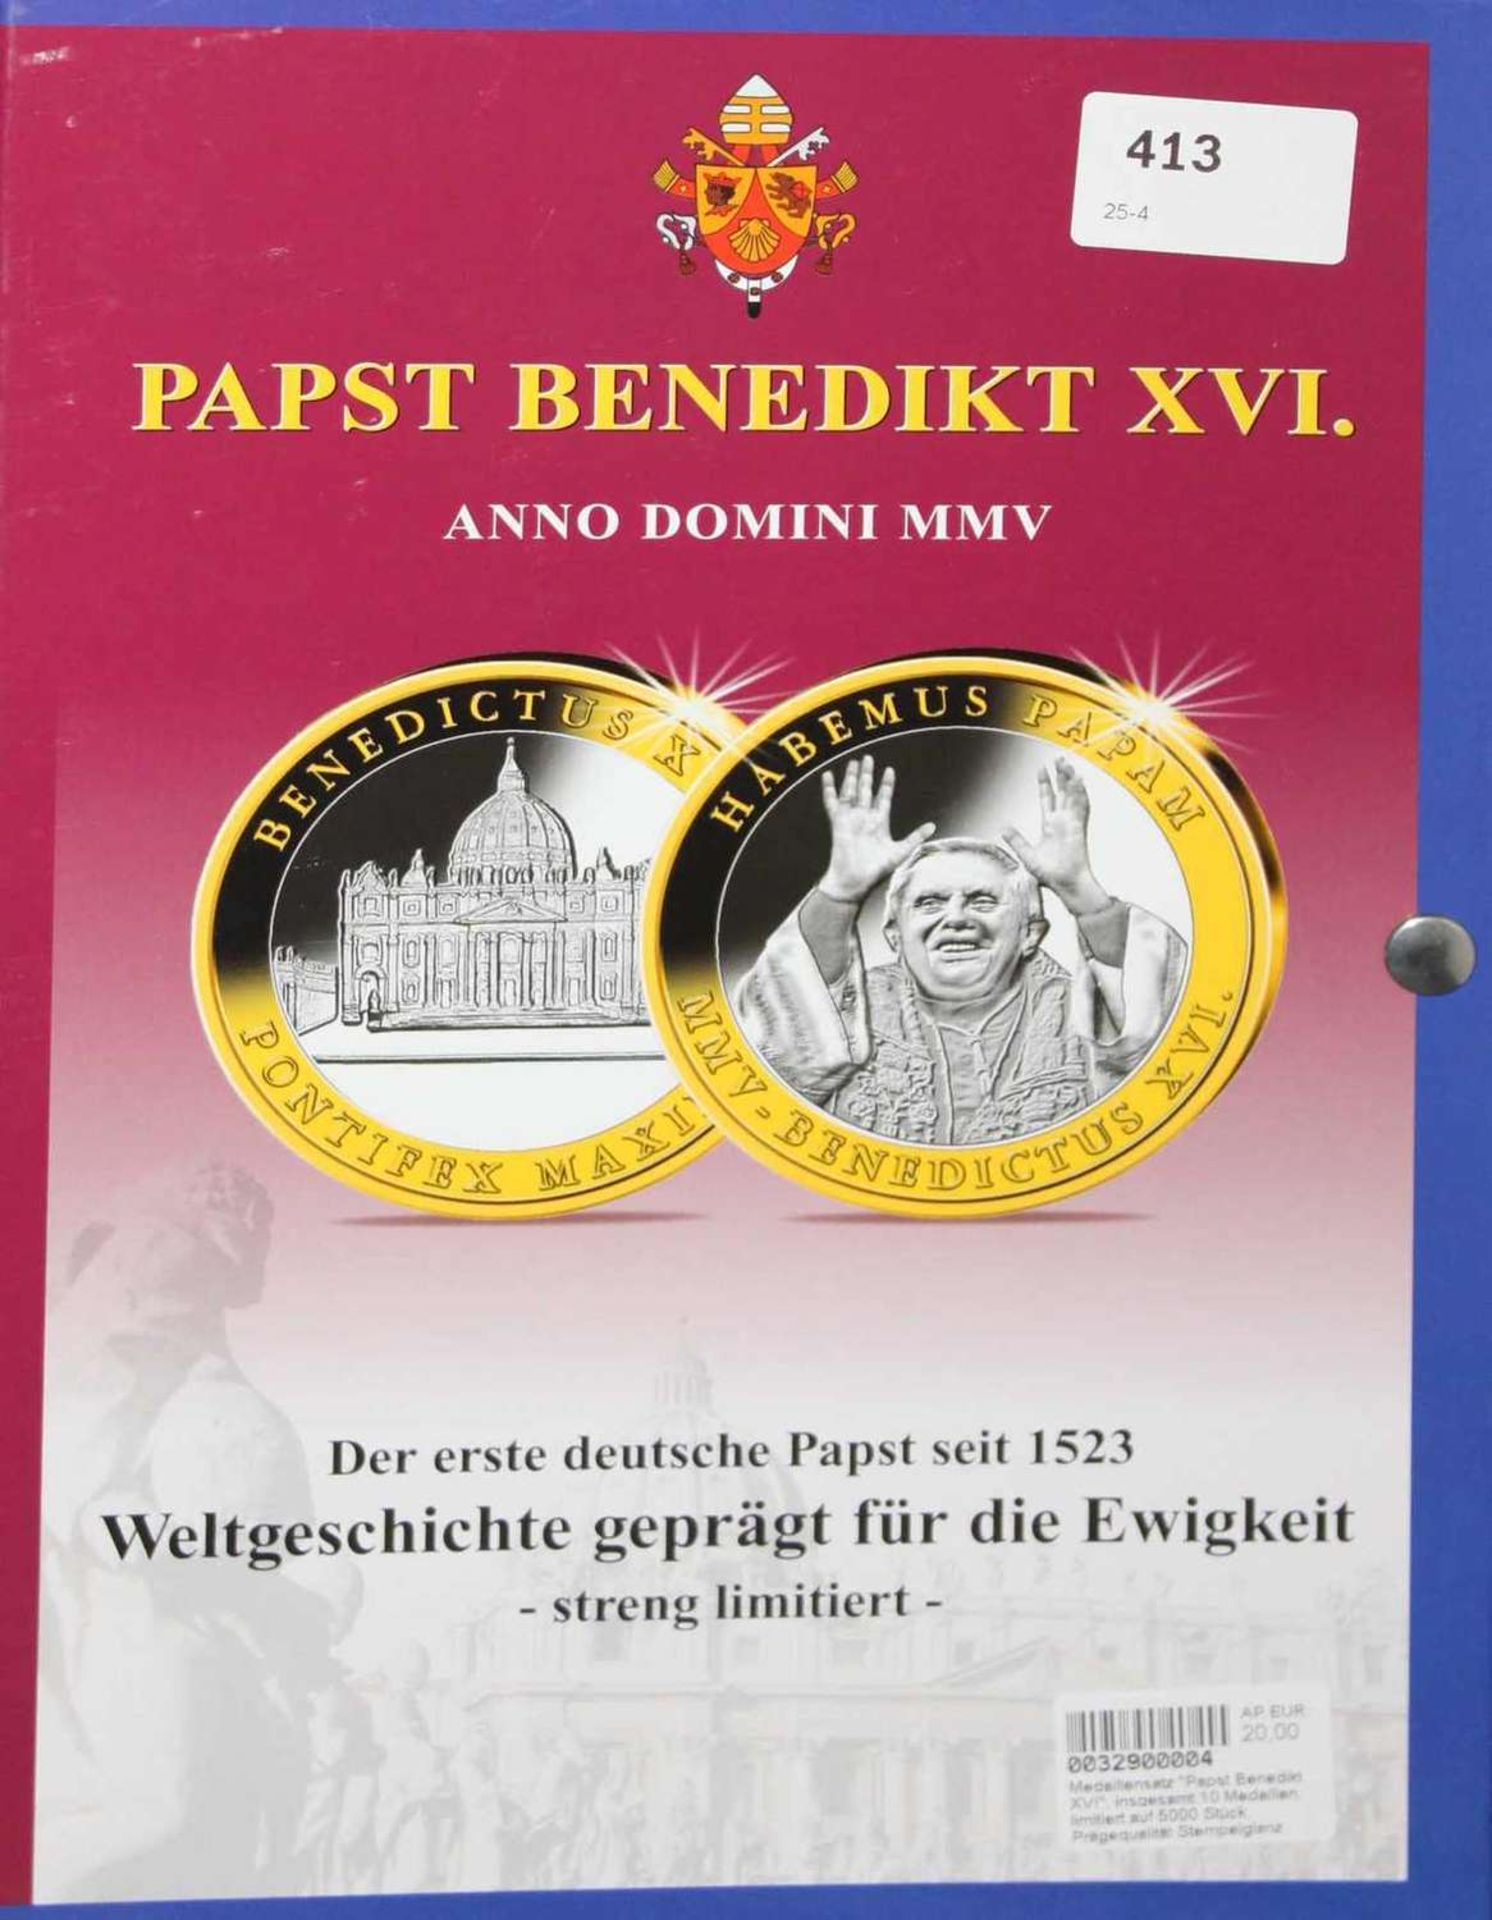 Medaillensatz "Papst Benedikt XVI", insgesamt 10 Medaillen, limitiert auf 5000 Stück.